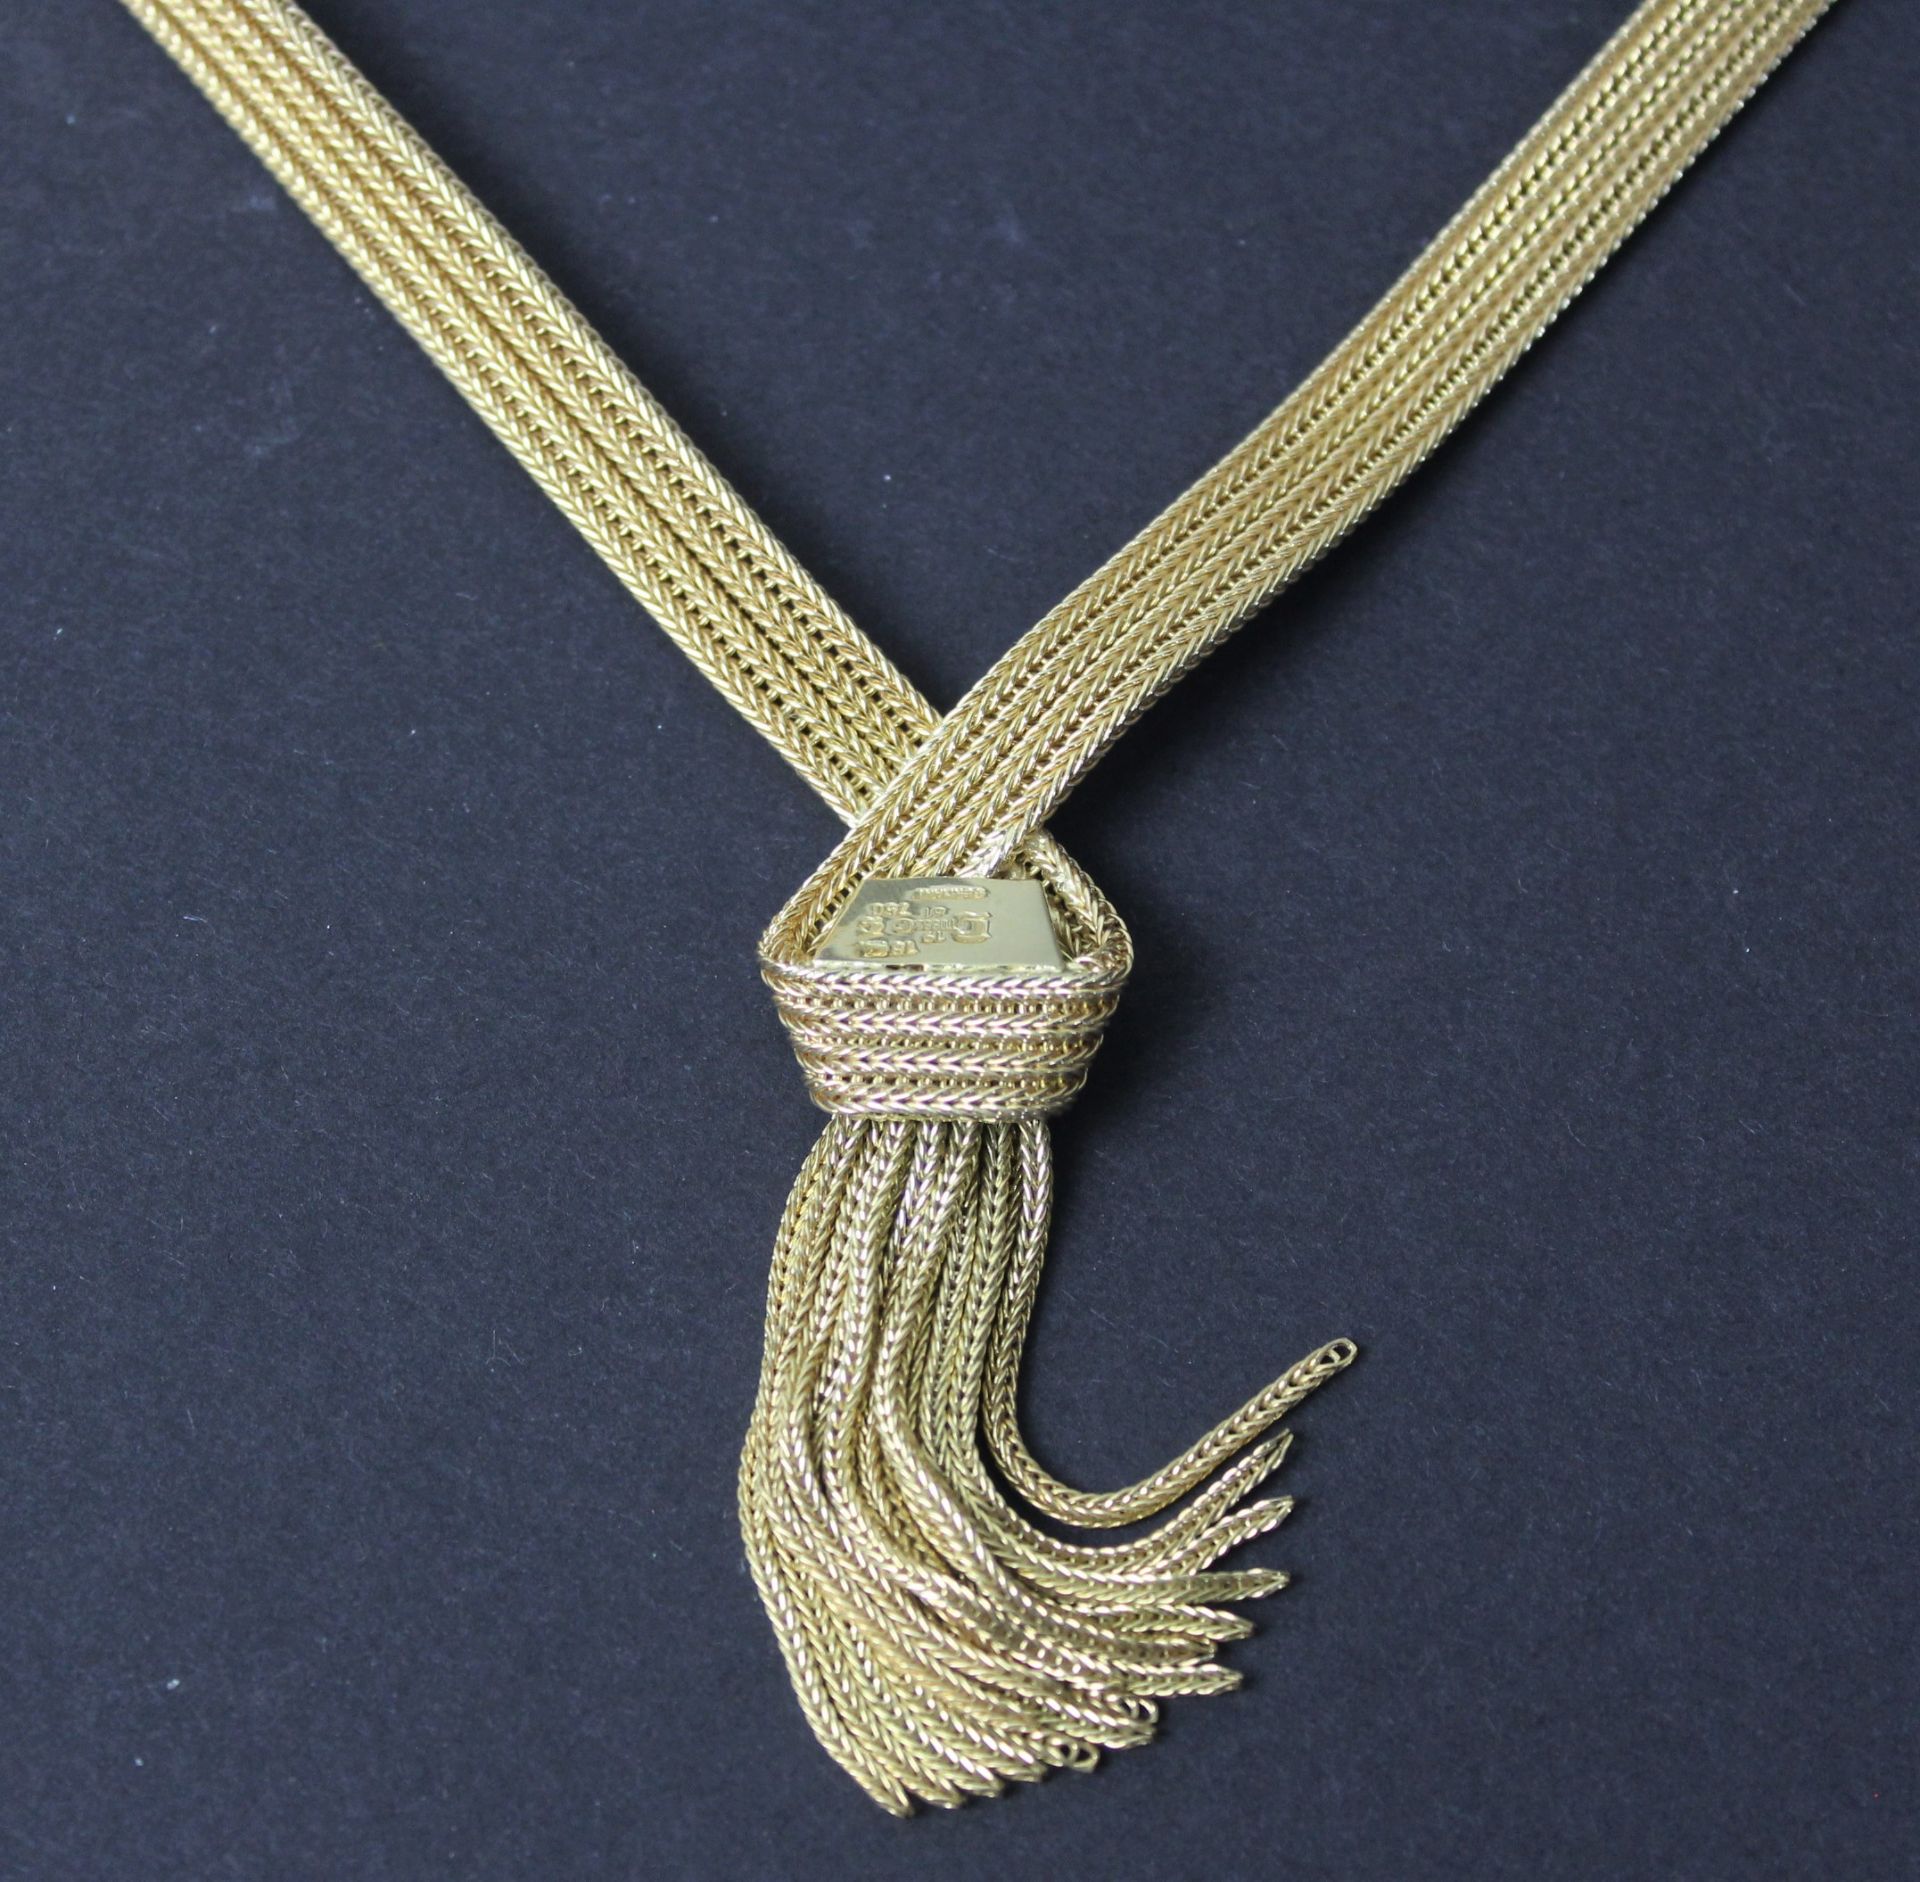 Collier 750 Gold in Schleifenform - Image 2 of 2